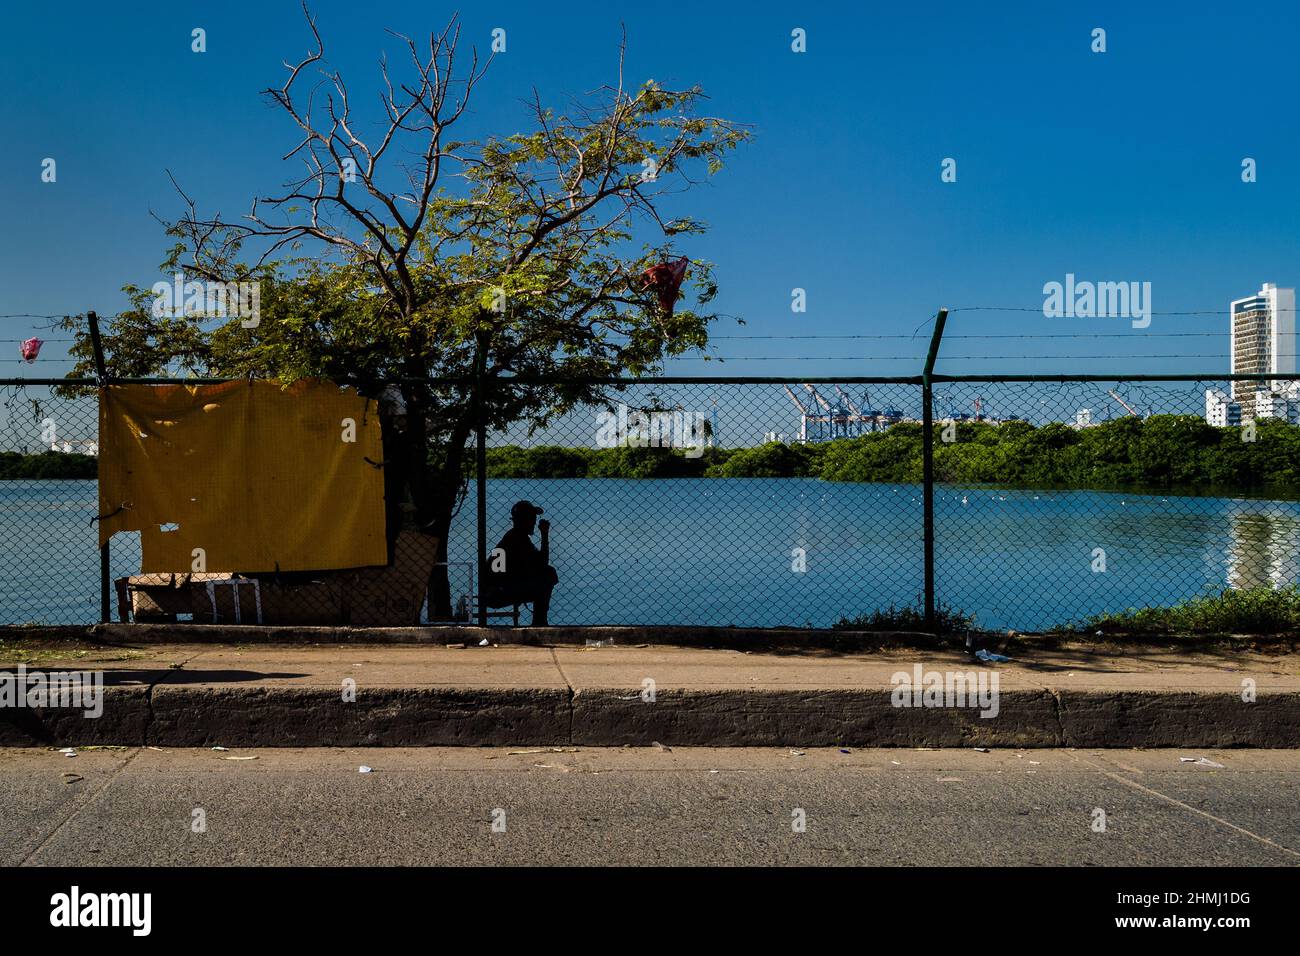 Un homme afro-colombien se trouve en face d'une cabane sur la rive de la lagune de la mer à Bahía de Manga, un quartier luxueux de Carthagène, en Colombie. Banque D'Images